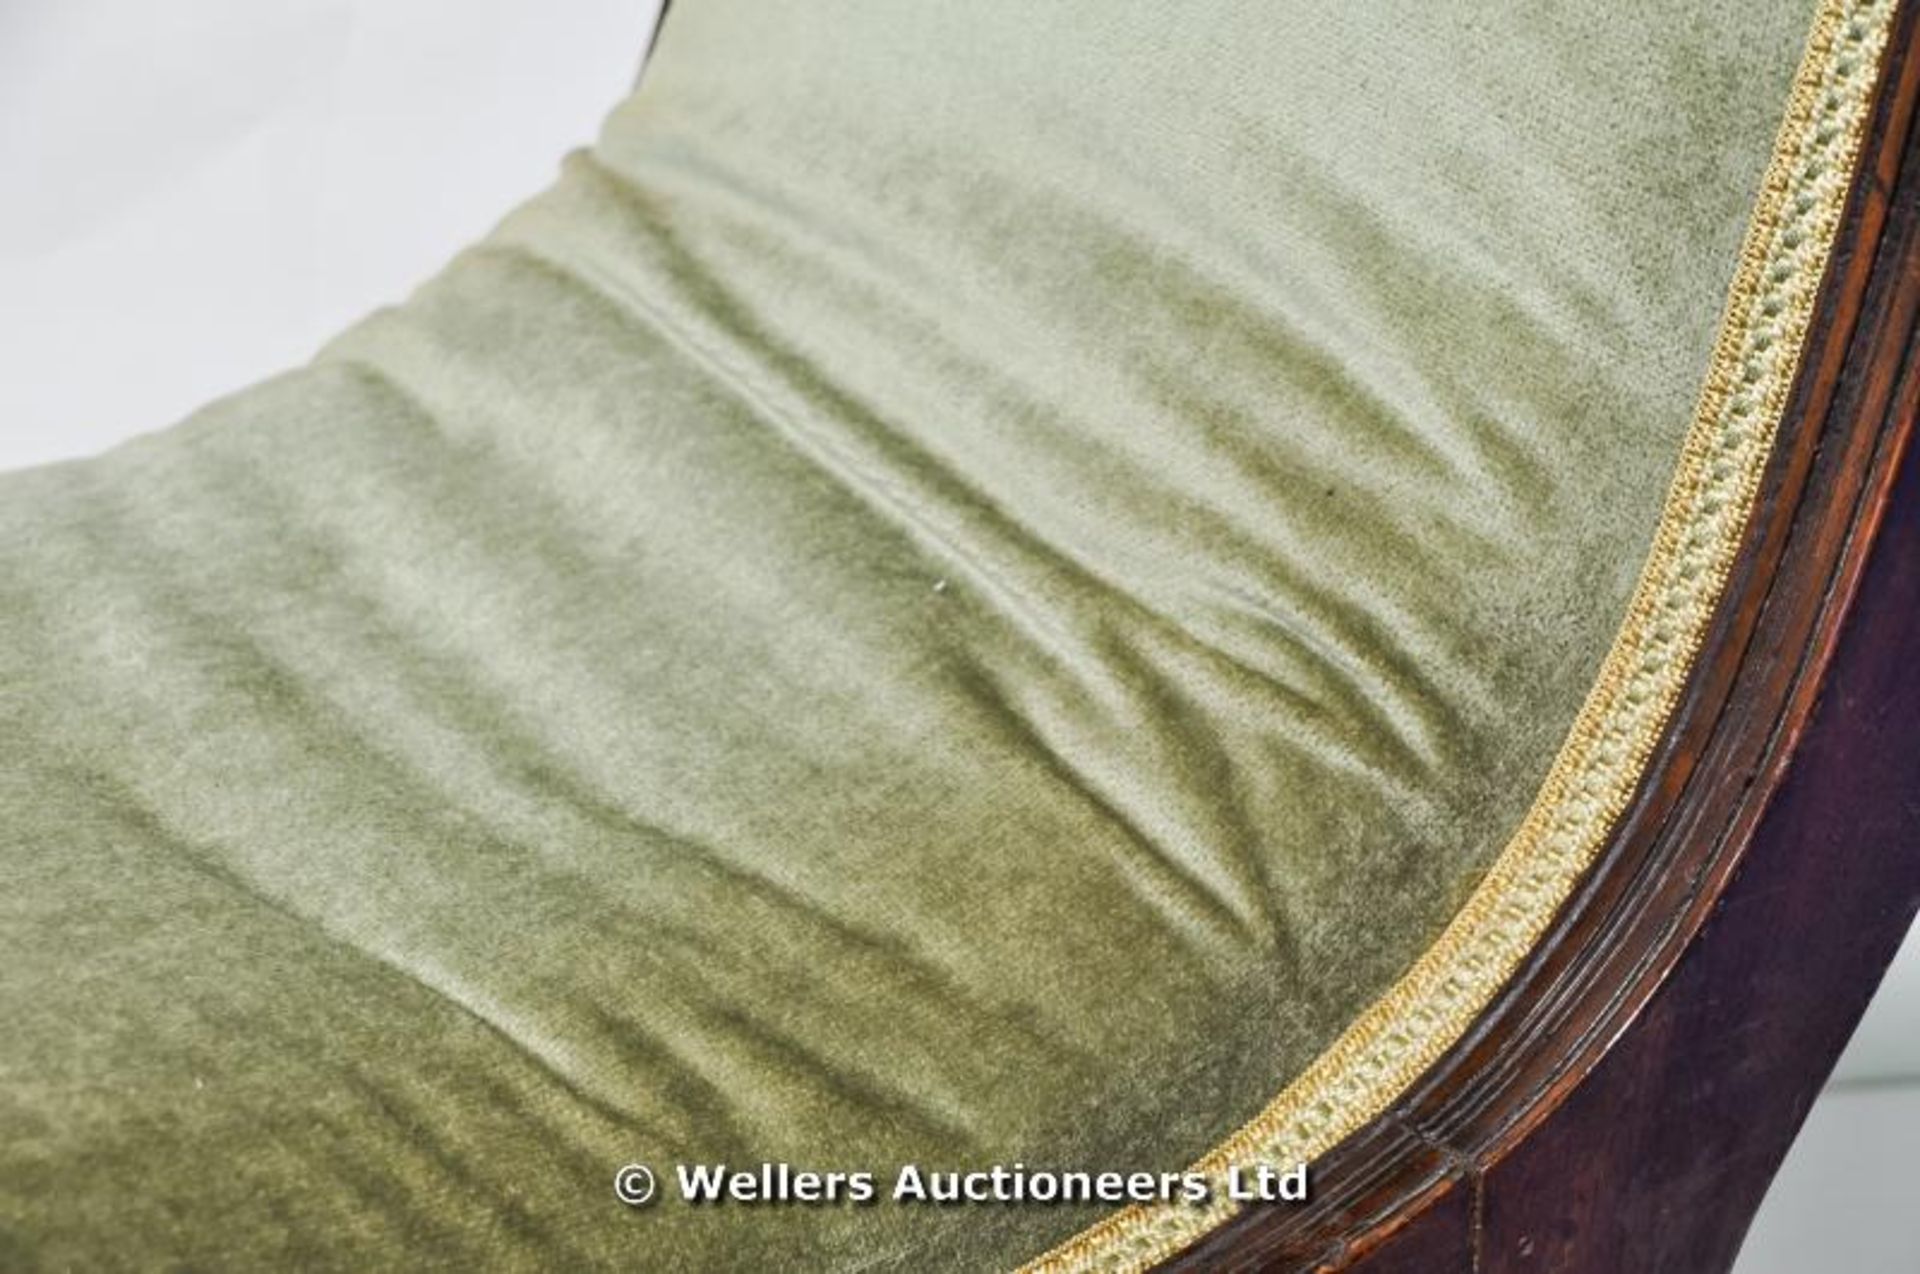 An Edwardian velour upholstered slipper chair - Image 3 of 4